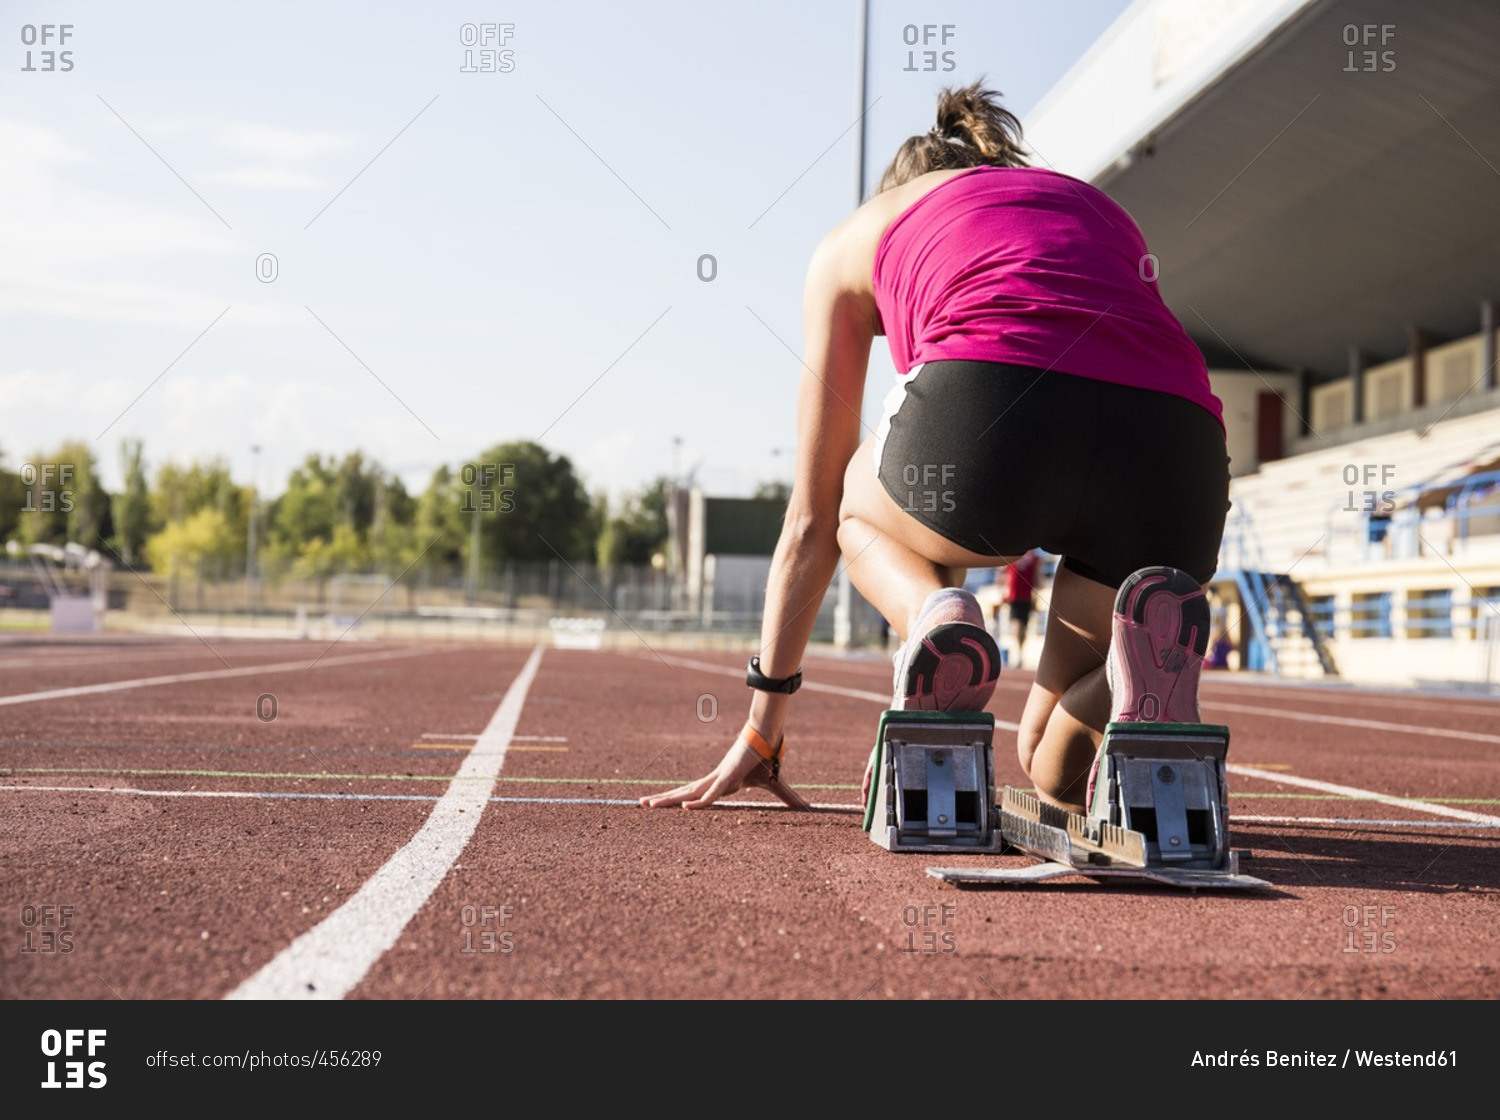 Female runner on tartan track in starting position